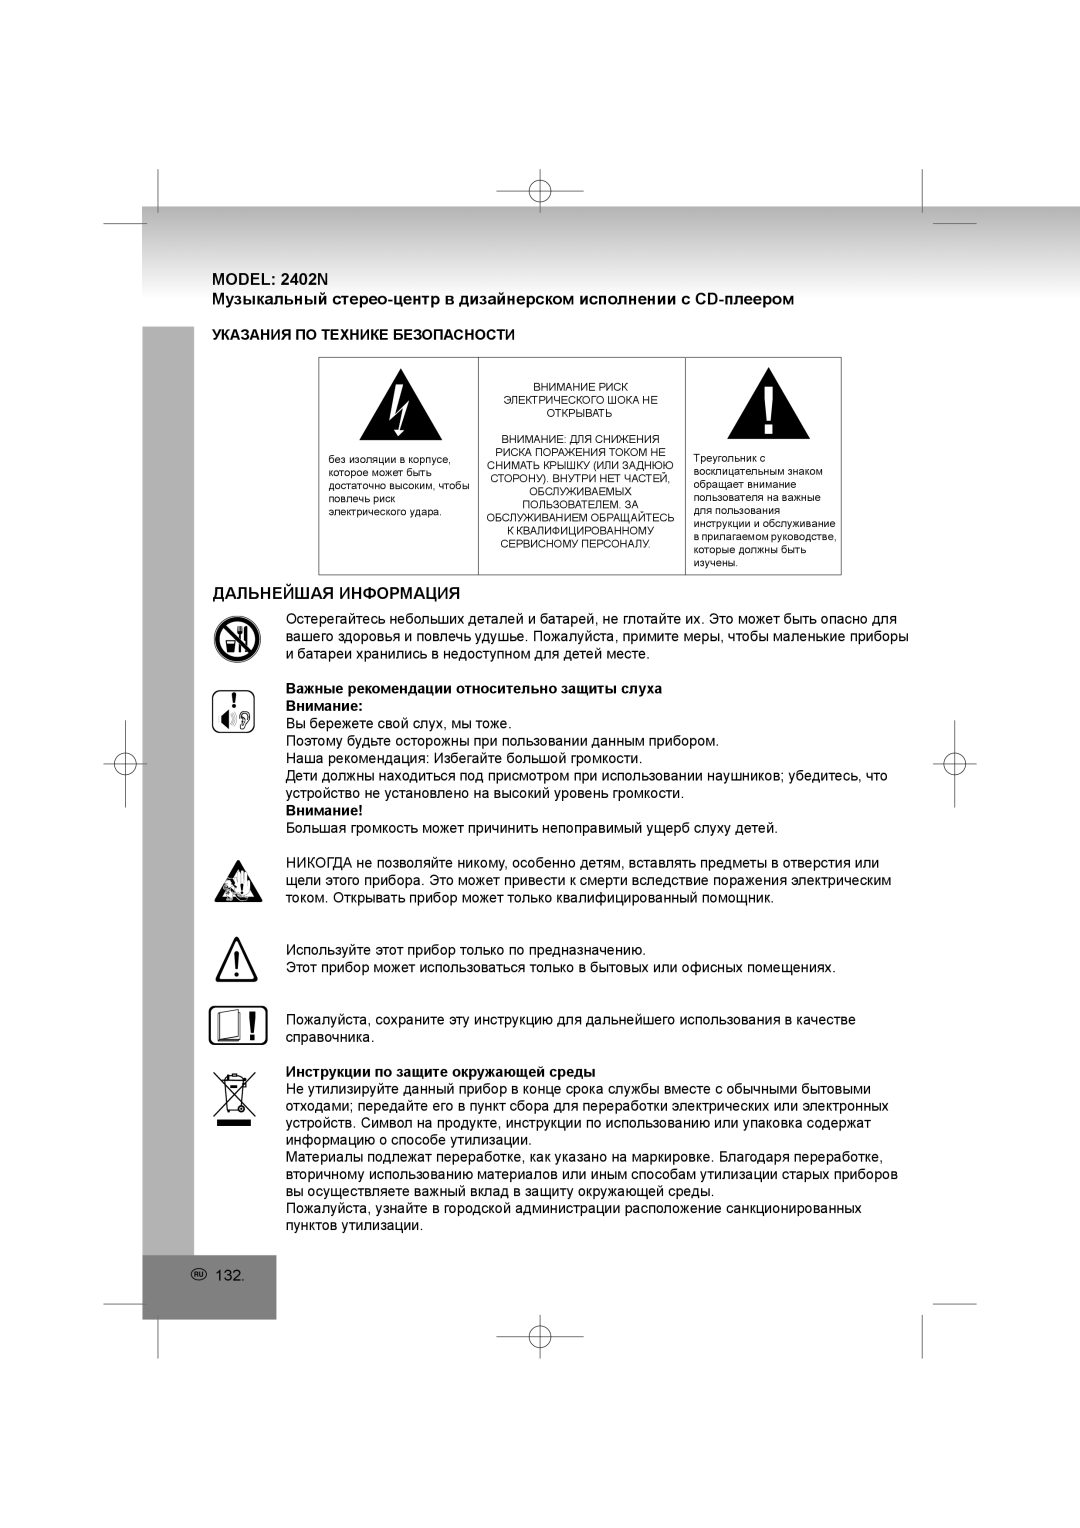 Elta 2402N manual Дальнейшая Информация, Указания По Технике Безопасности, Внимание, Инструкции по защите окружающей среды 